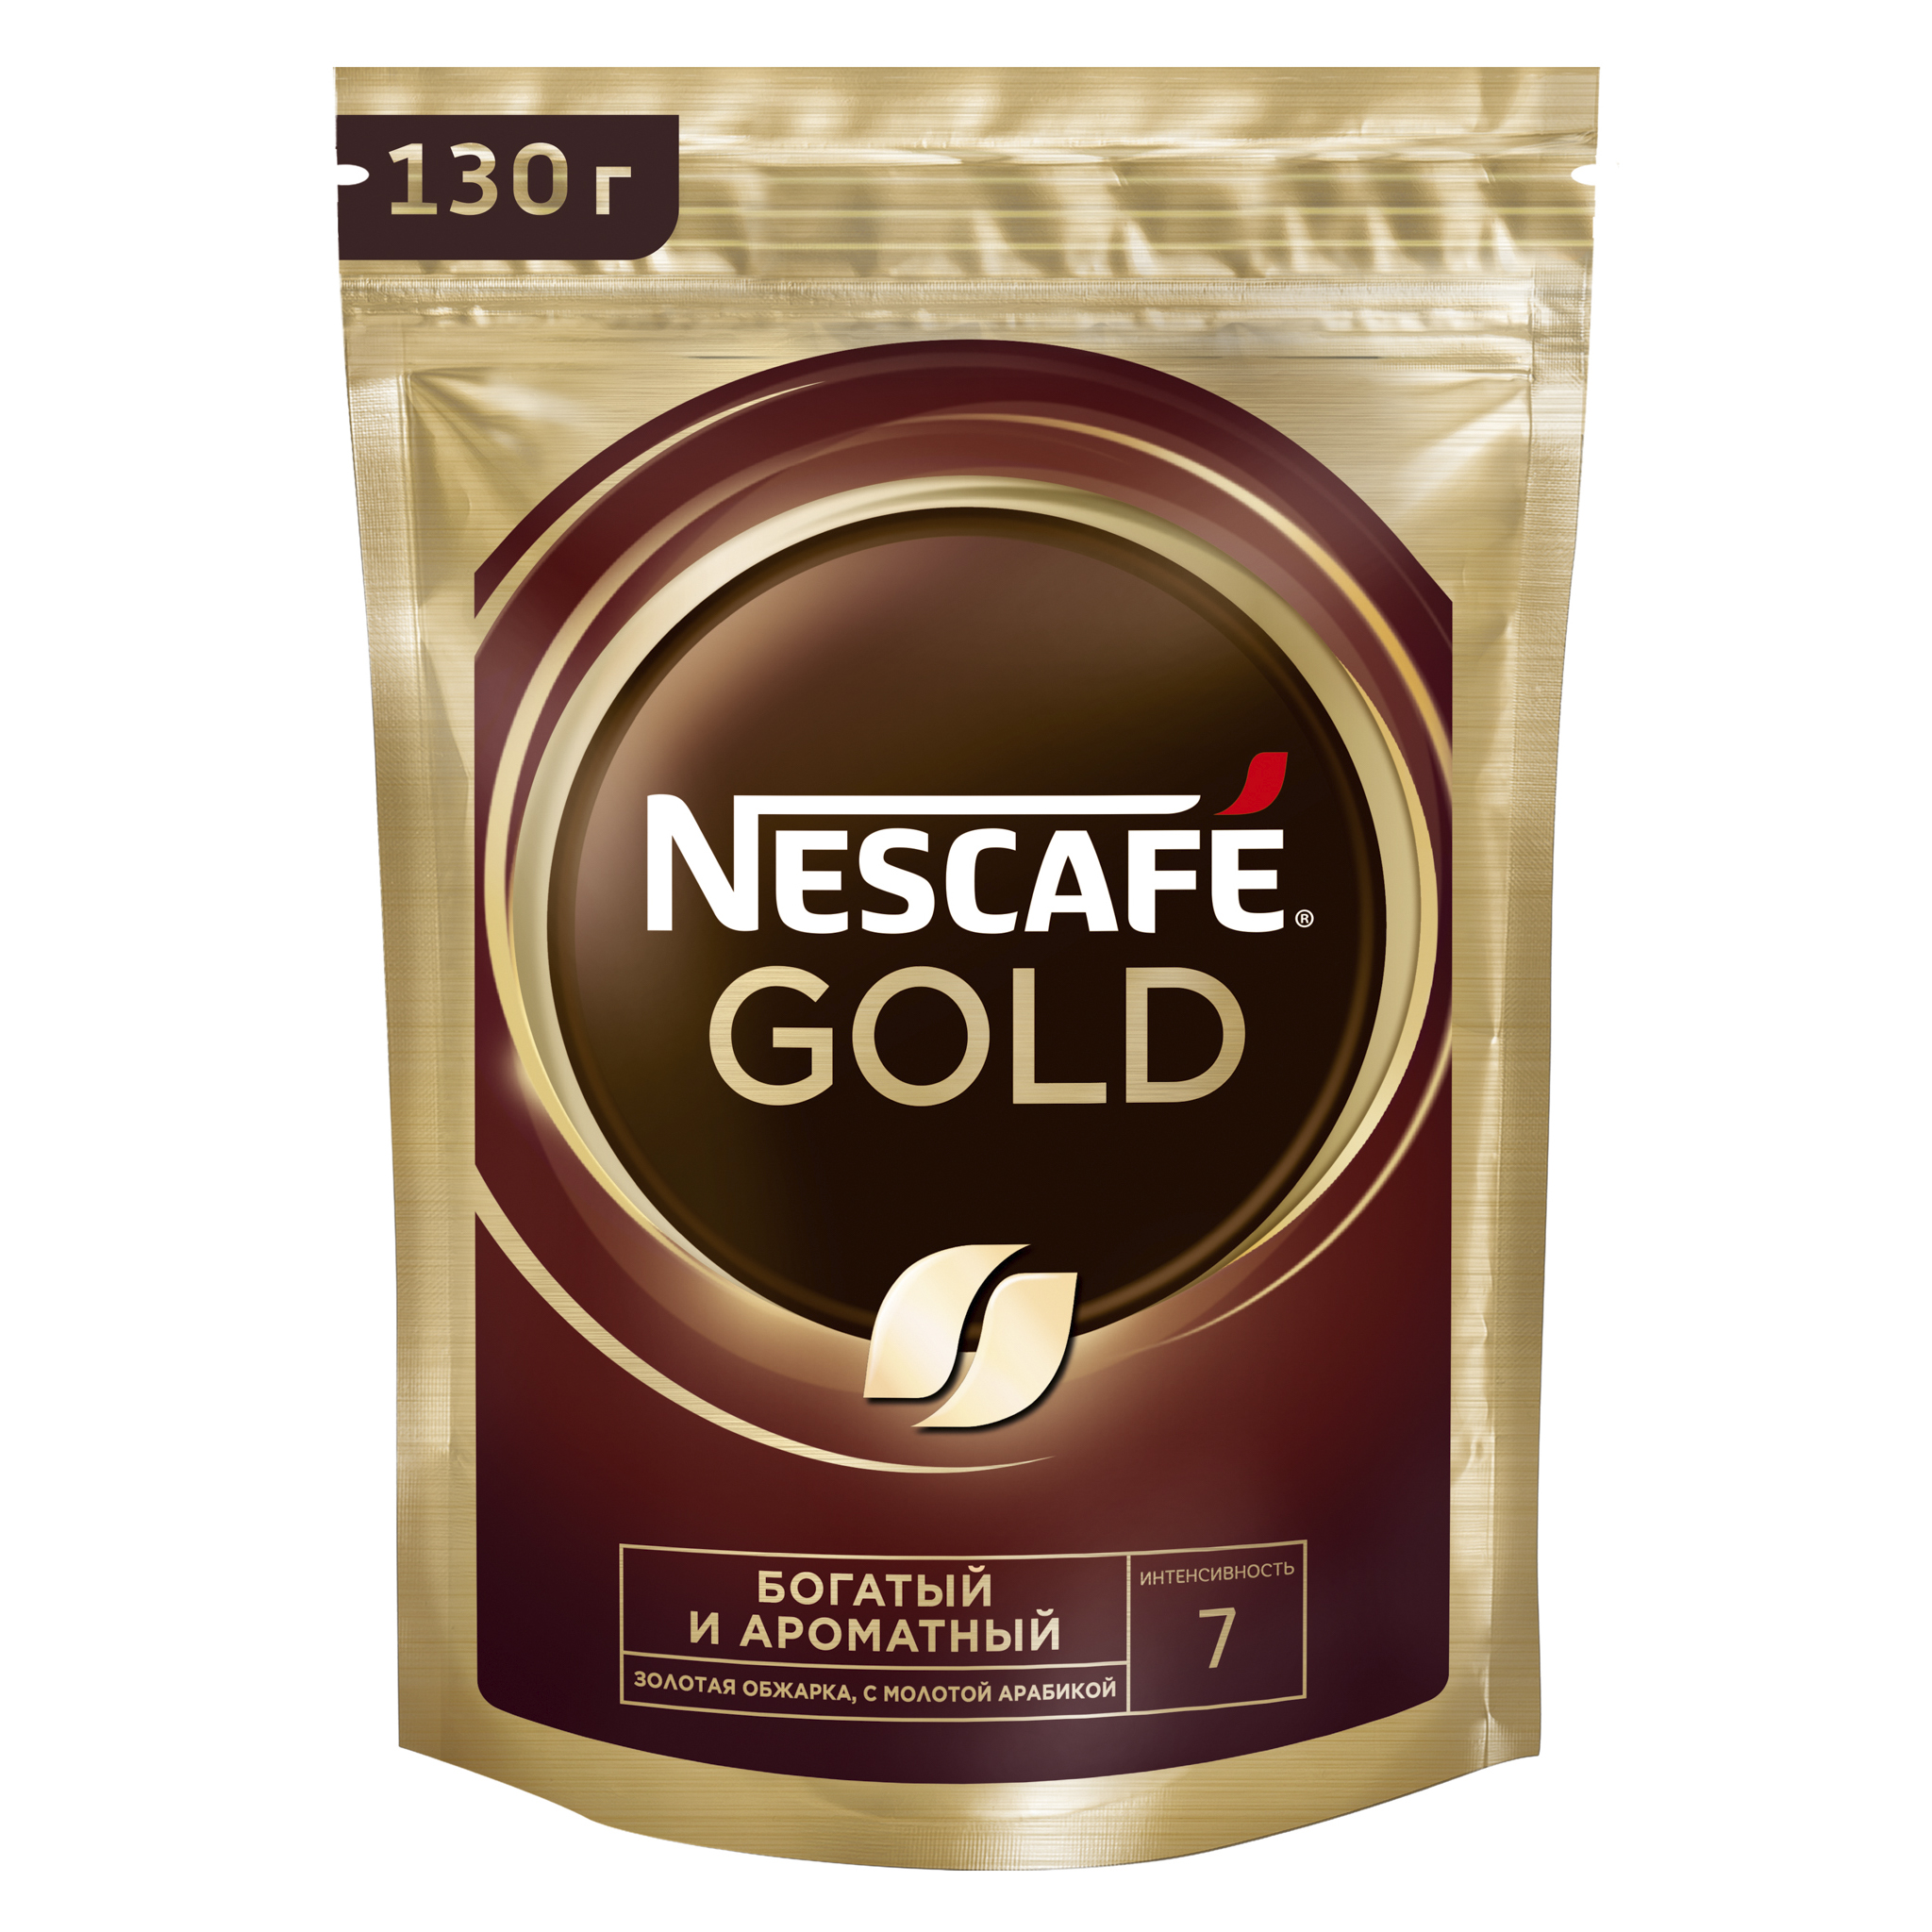 Nescafe gold 190 г. Нескафе Голд 190. Кофе Nescafe Gold растворимый, 75г. Нескафе Голд 75 гр мягкая упаковка. Нескафе Голд 500 грамм.